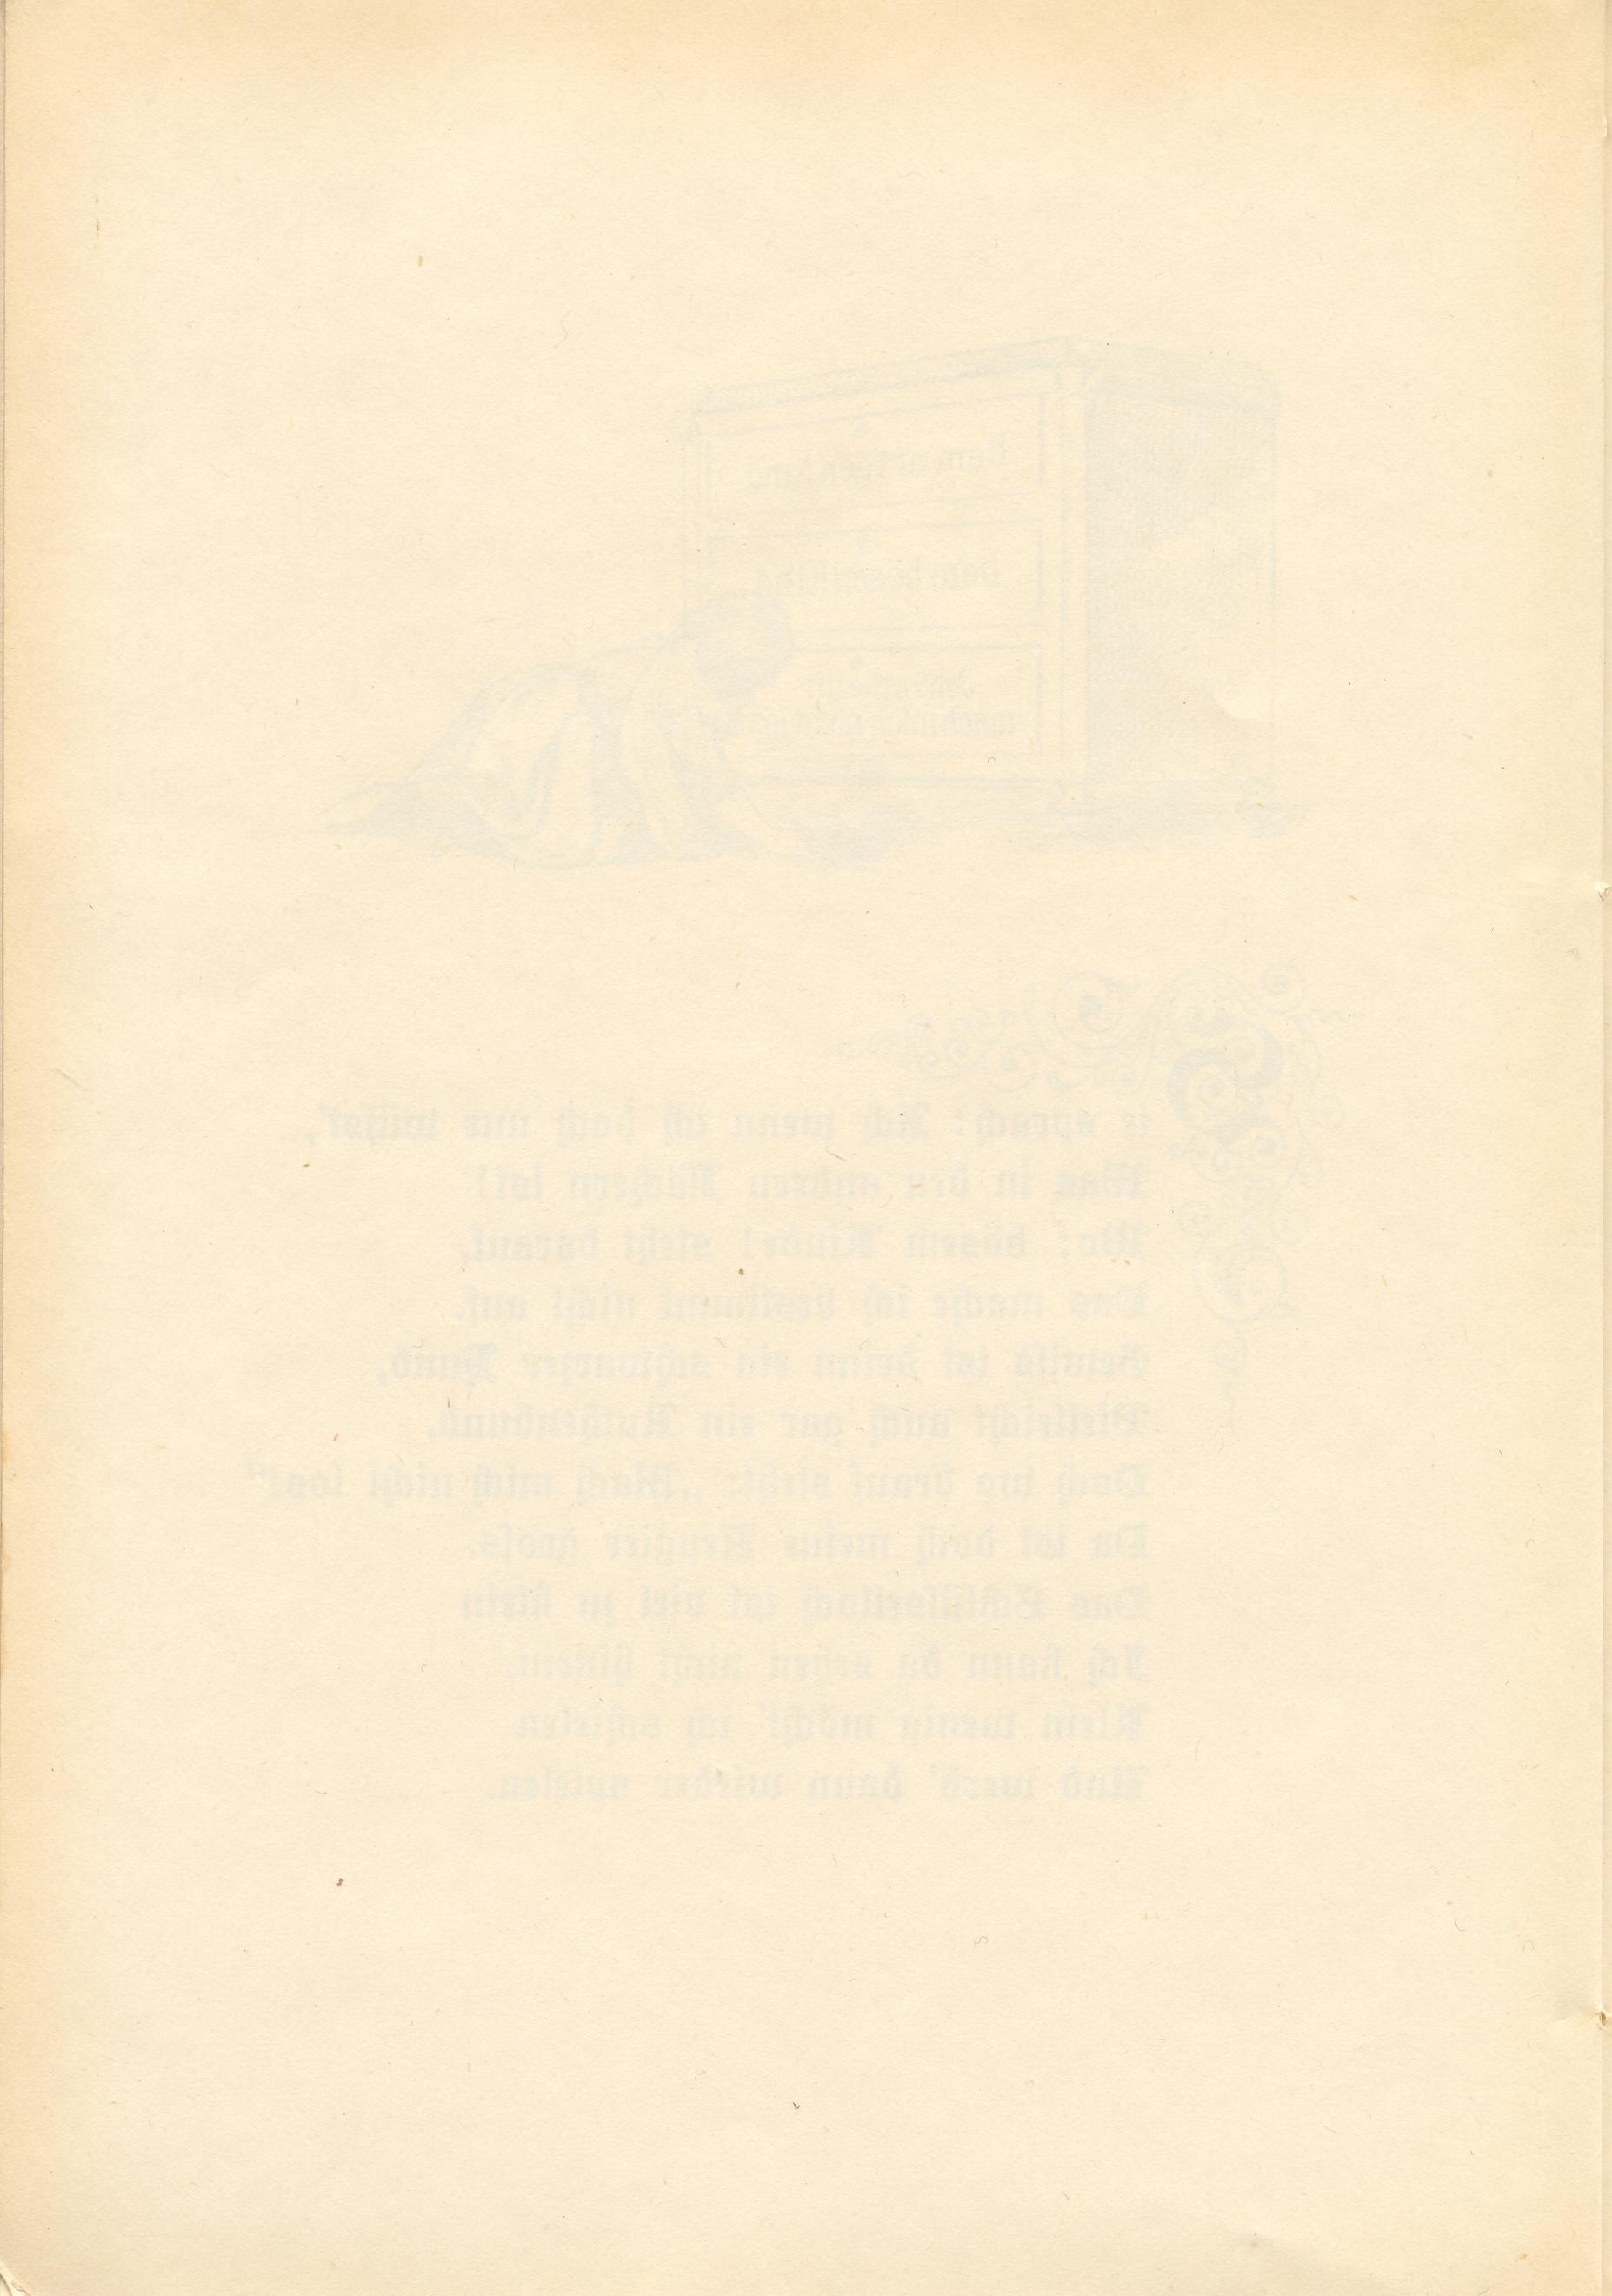 Martha Marzibill (1900) | 20. (18) Main body of text